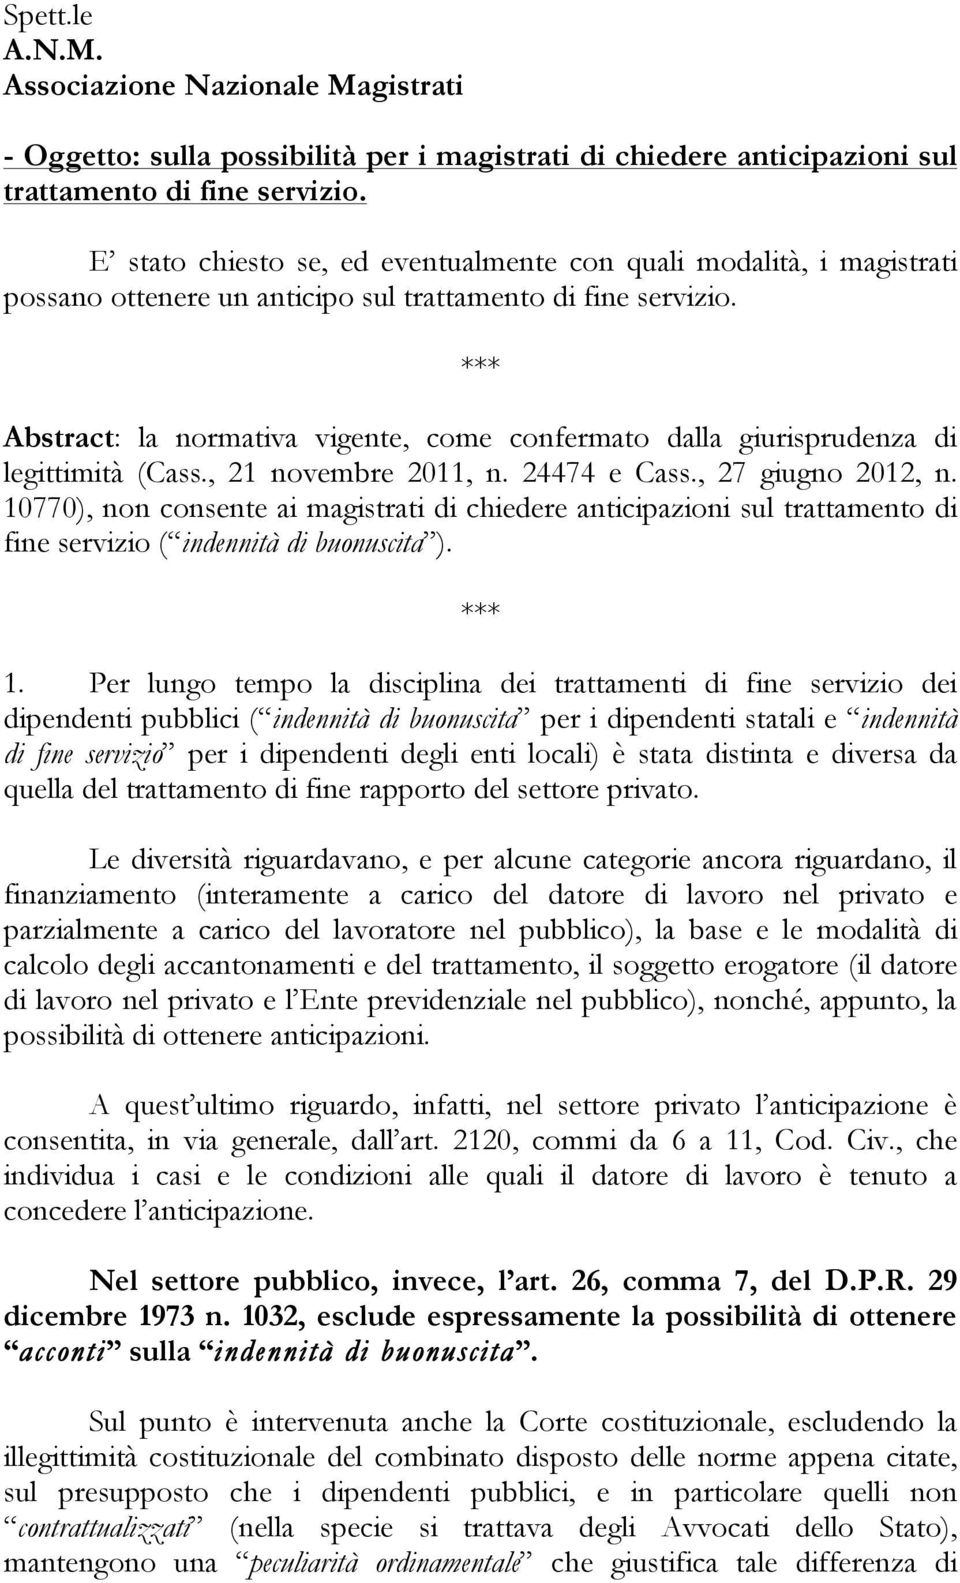 Abstract: la normativa vigente, come confermato dalla giurisprudenza di legittimità (Cass., 21 novembre 2011, n. 24474 e Cass., 27 giugno 2012, n.